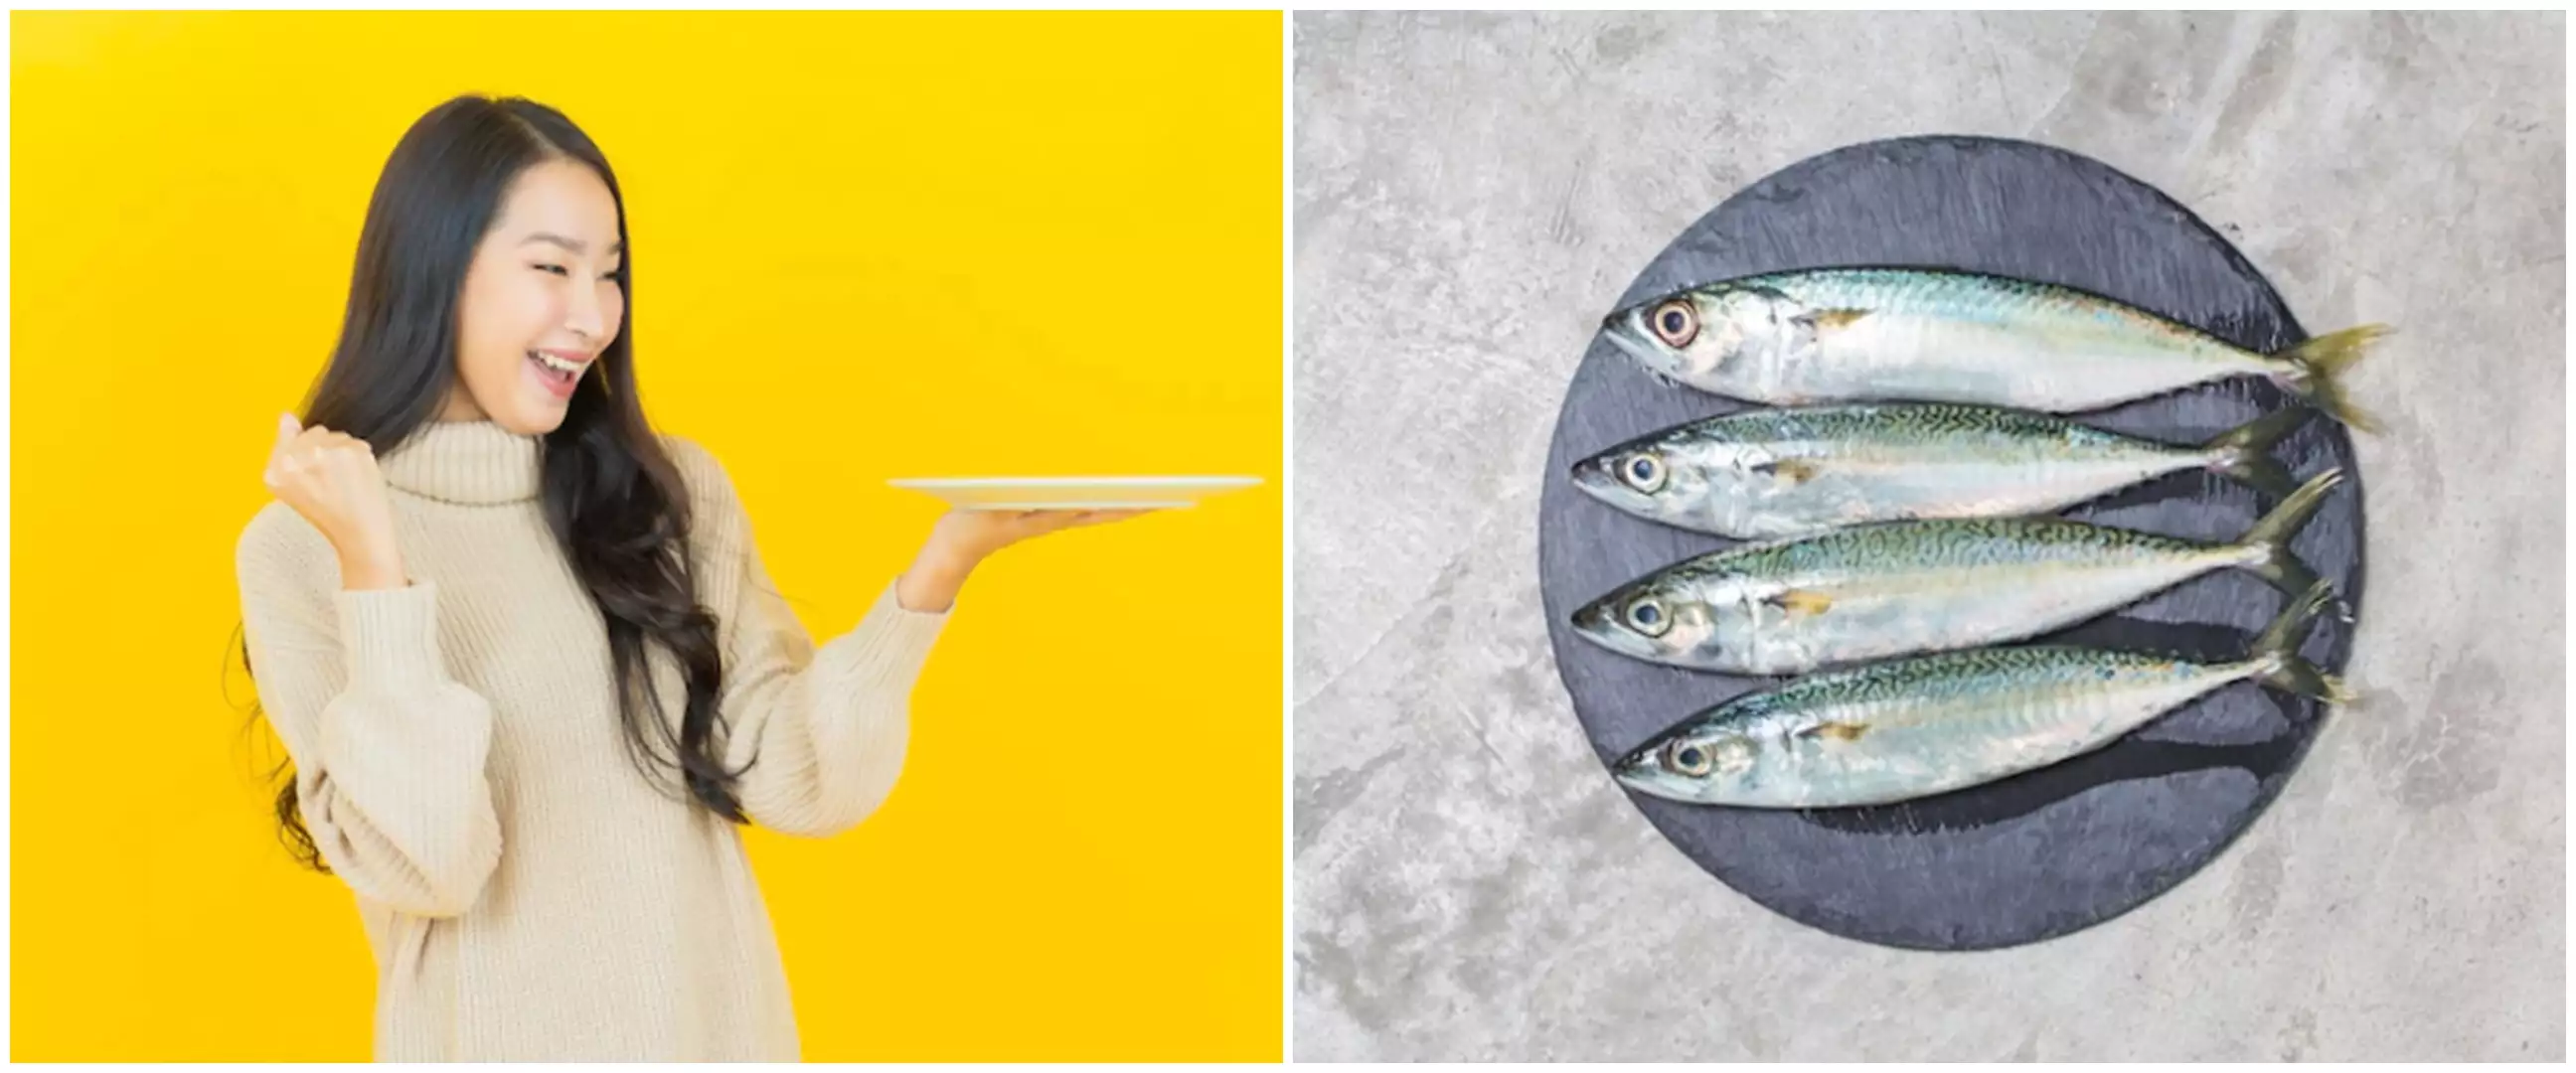 20 Arti mimpi makan ikan, punya makna harus waspada akan hal yang terjadi di masa depan